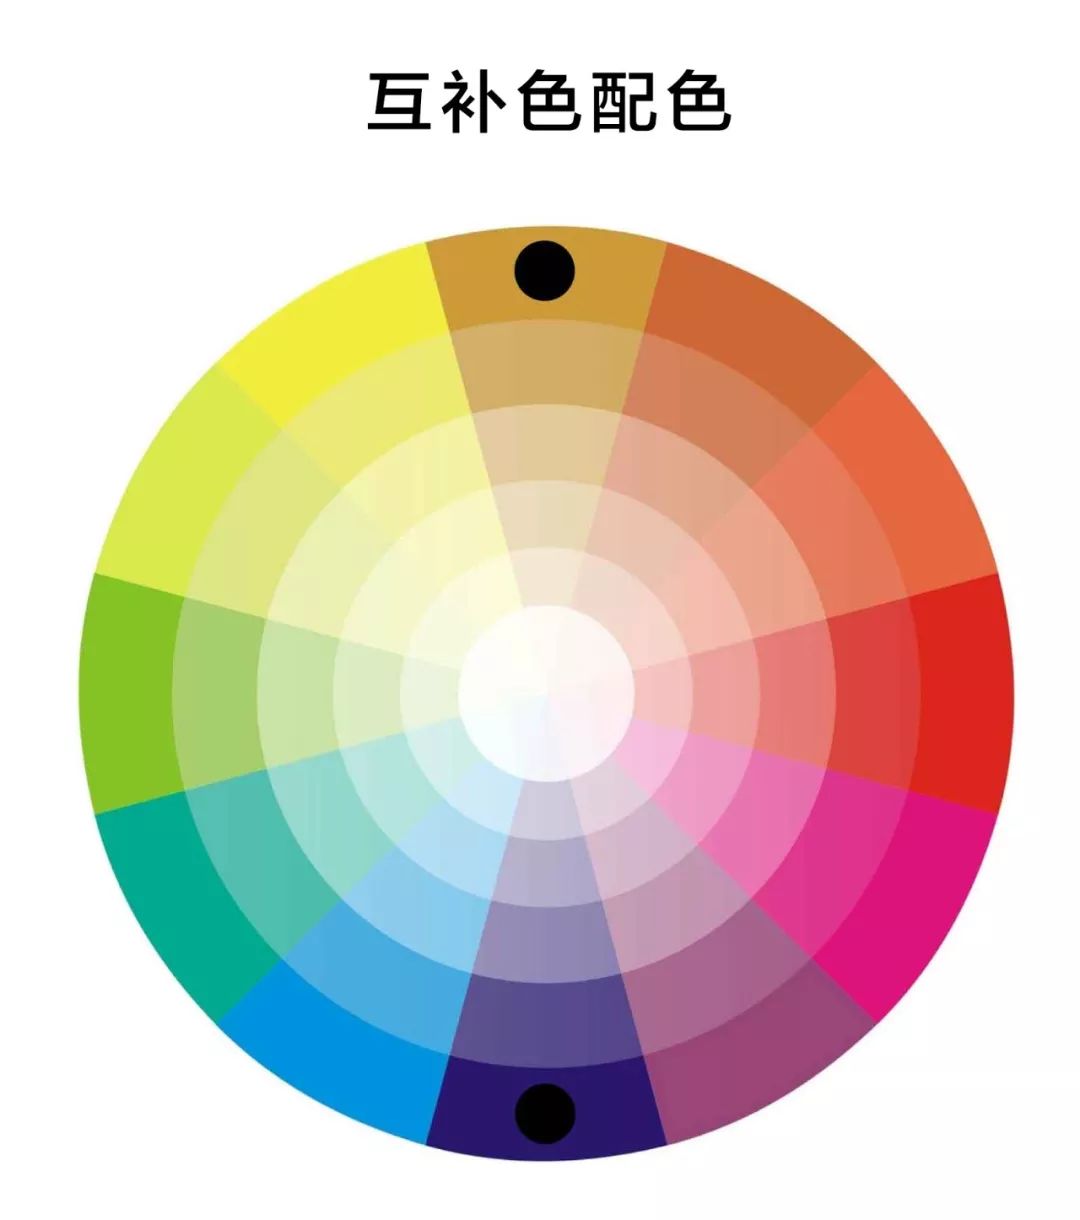 对比色陈列 色相环中相差120度-150度之间的颜色; 如:红与黄,红与蓝